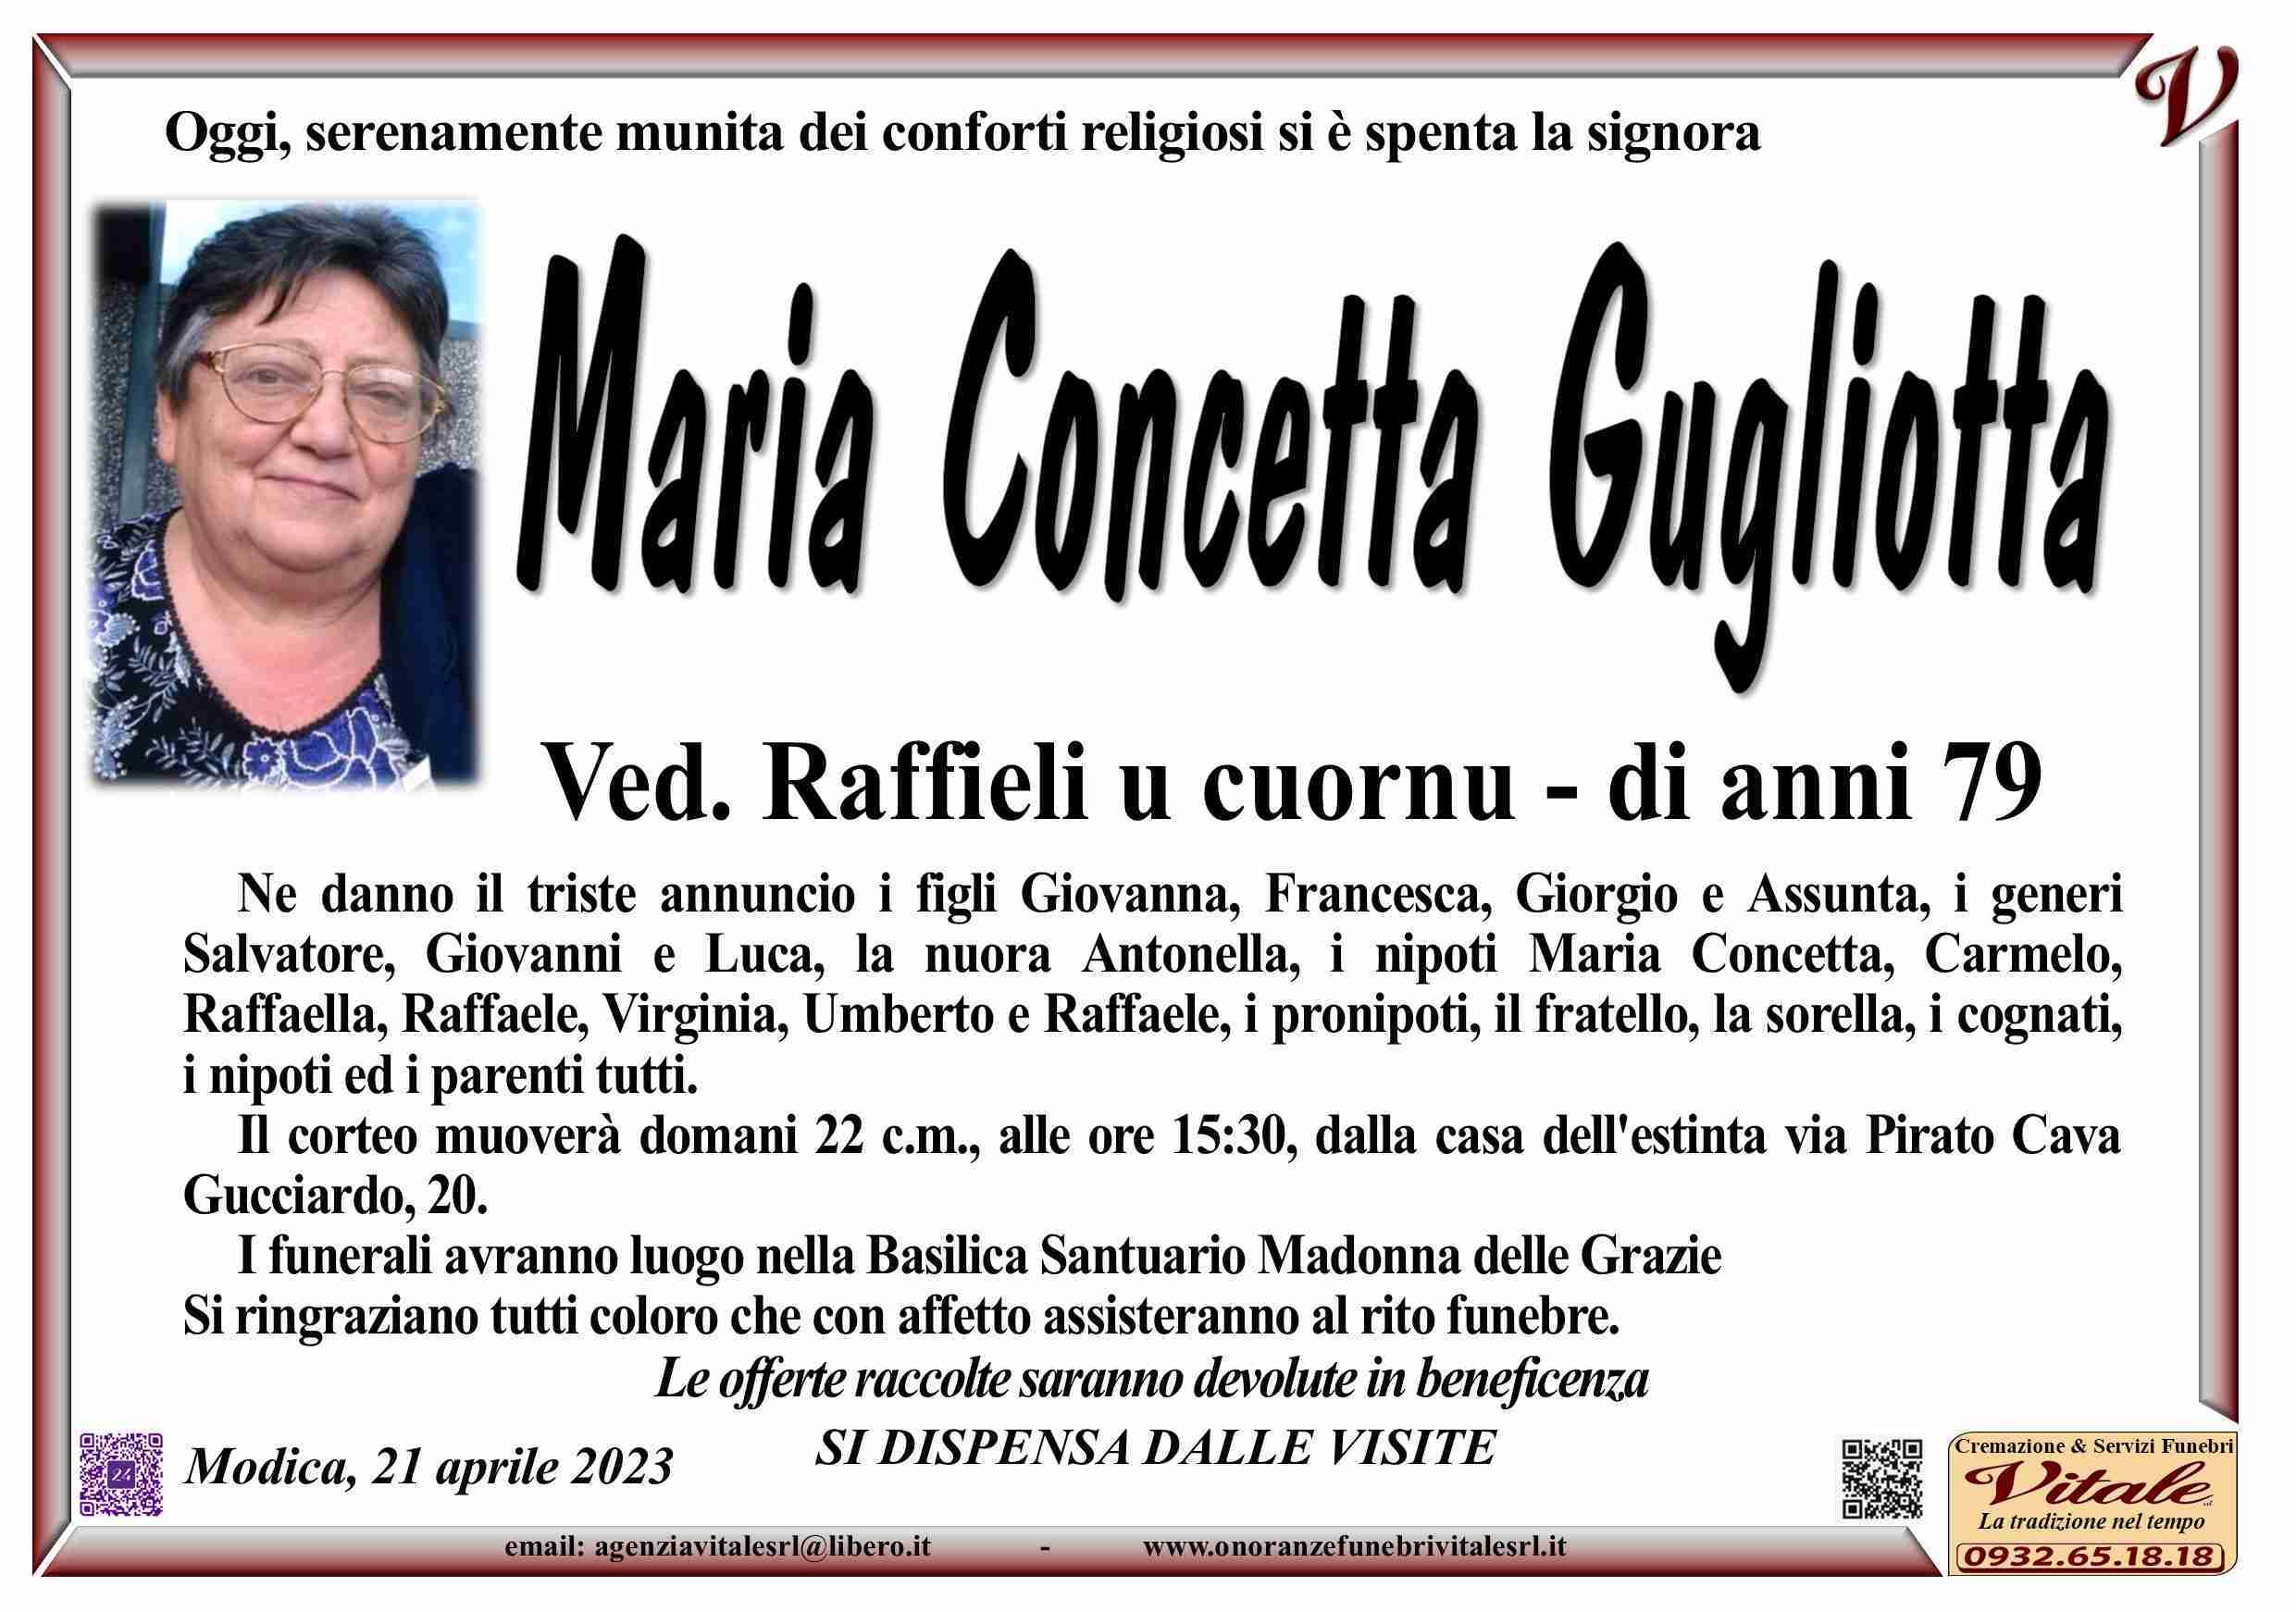 Maria Concetta Gugliotta